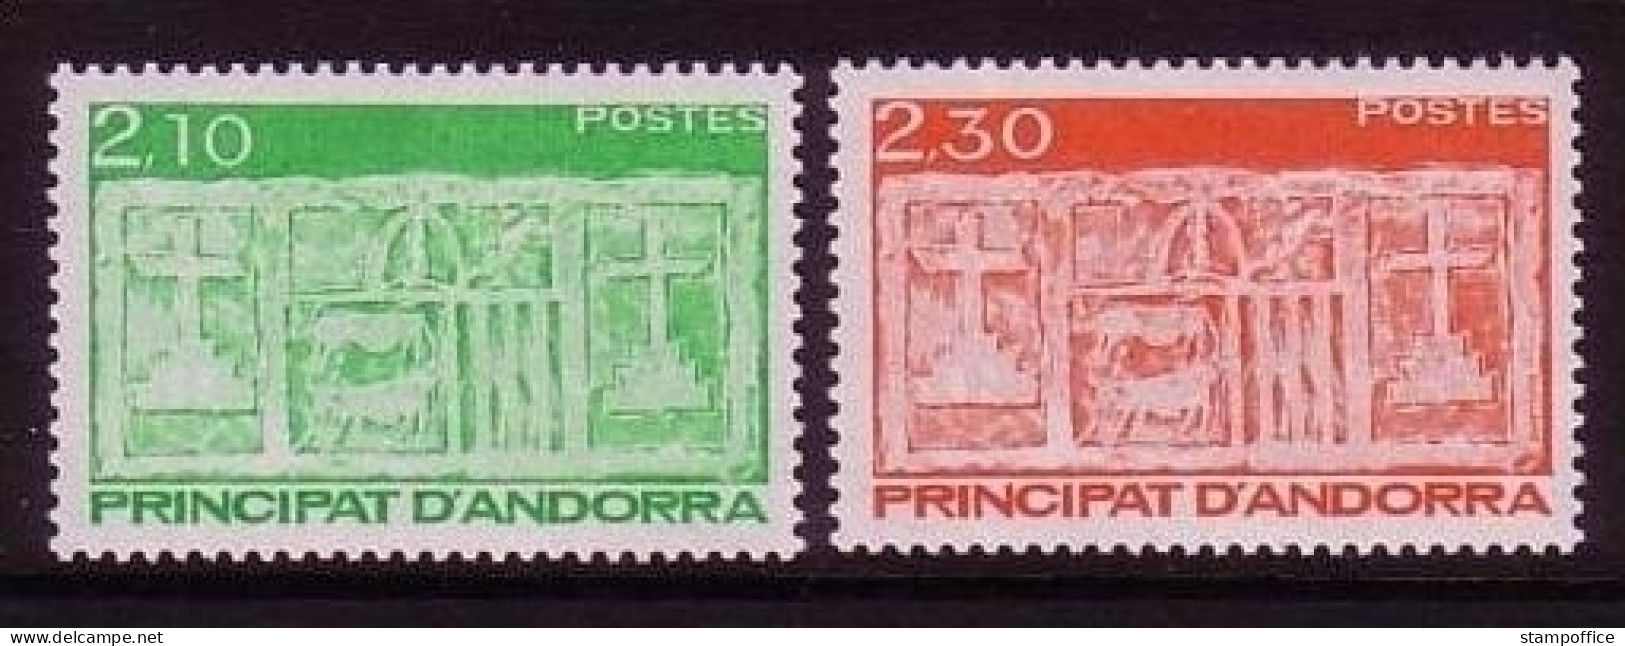 ANDORRA FRANZÖSISCH MI-NR. 411-412 POSTFRISCH(MINT) ÄLTESTE WAPPEN Von ANDORRA 1990 - Unused Stamps